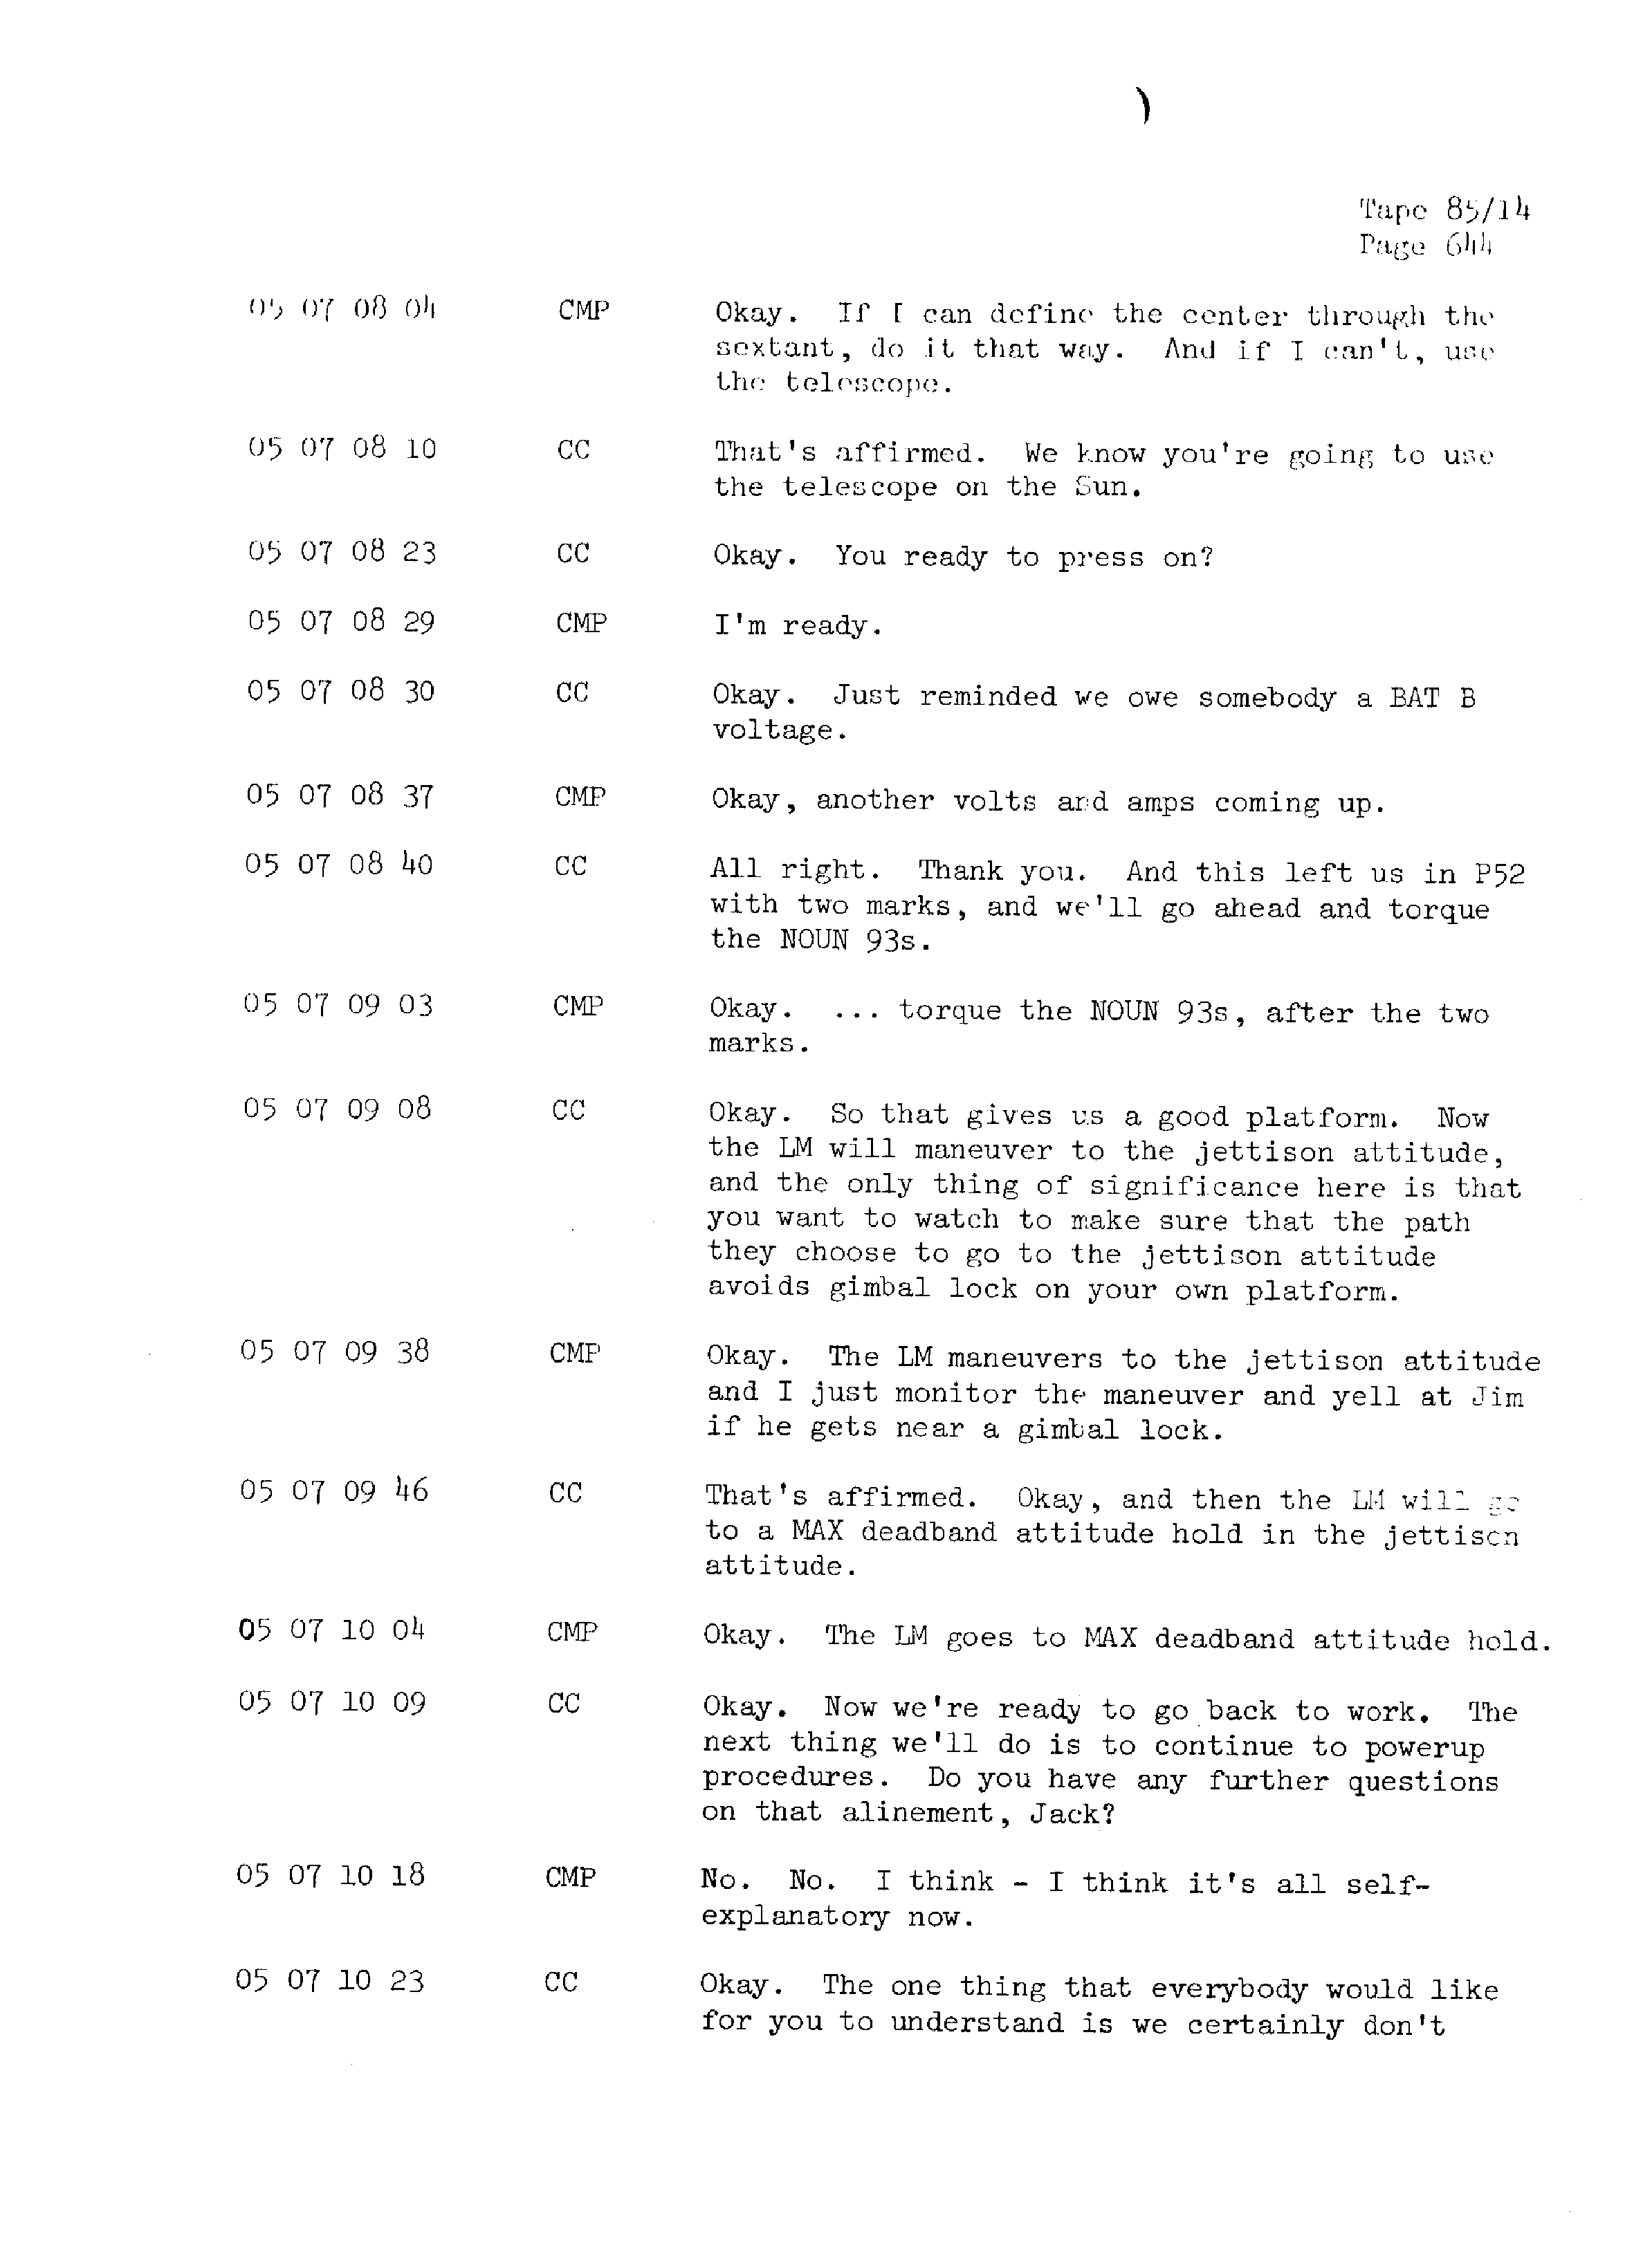 Page 651 of Apollo 13’s original transcript